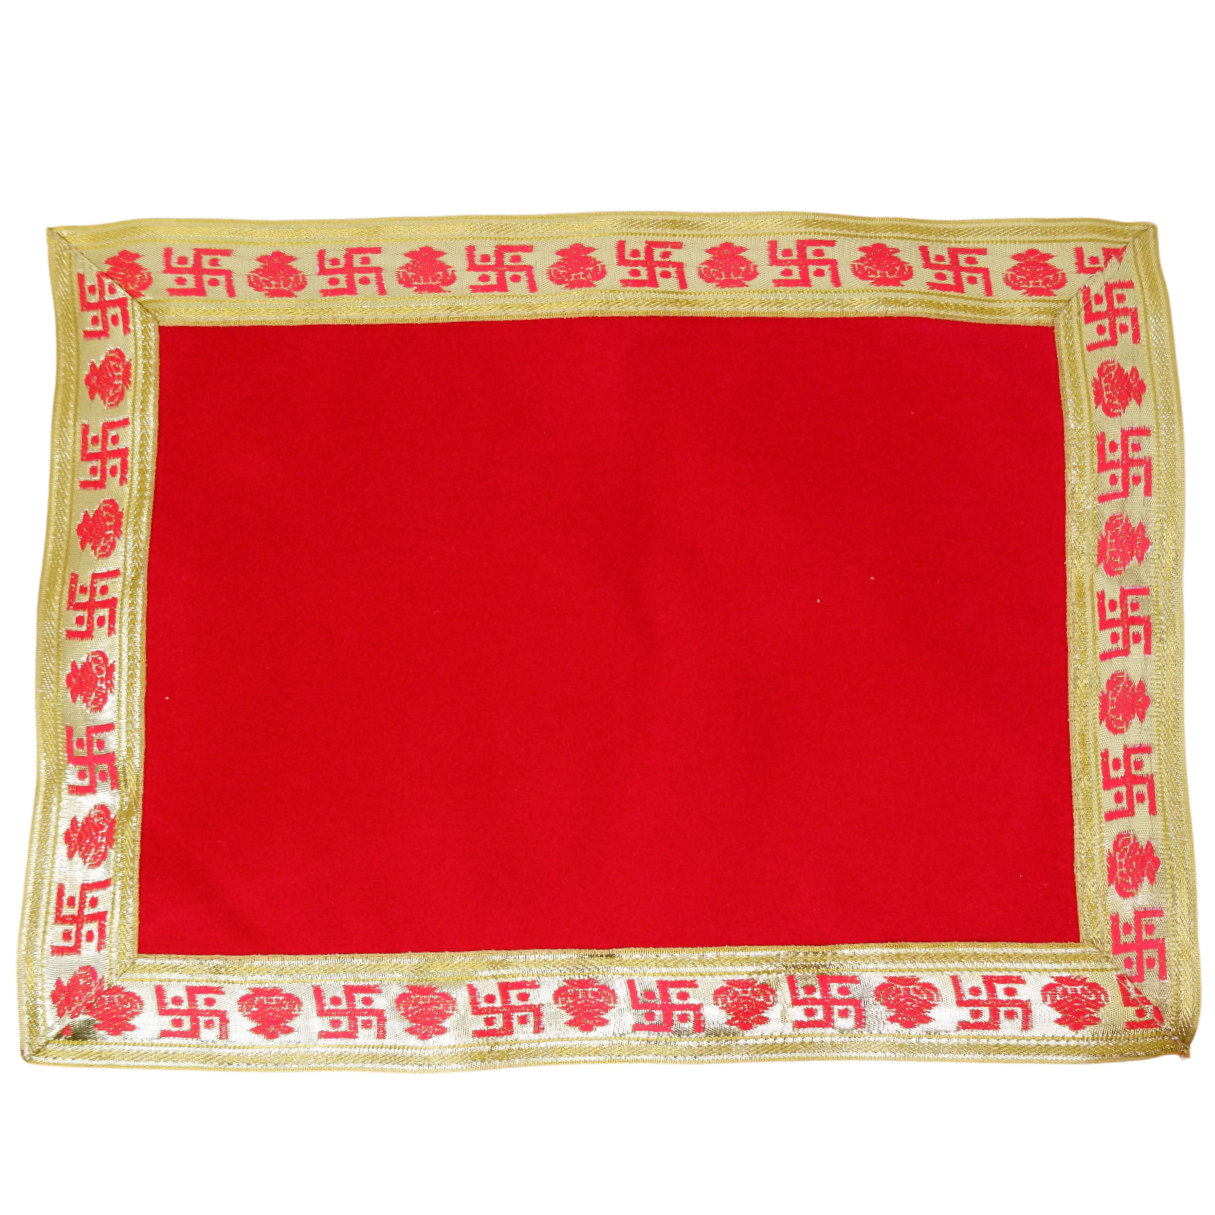 Velvet Pooja Aasan Cloth (Red)